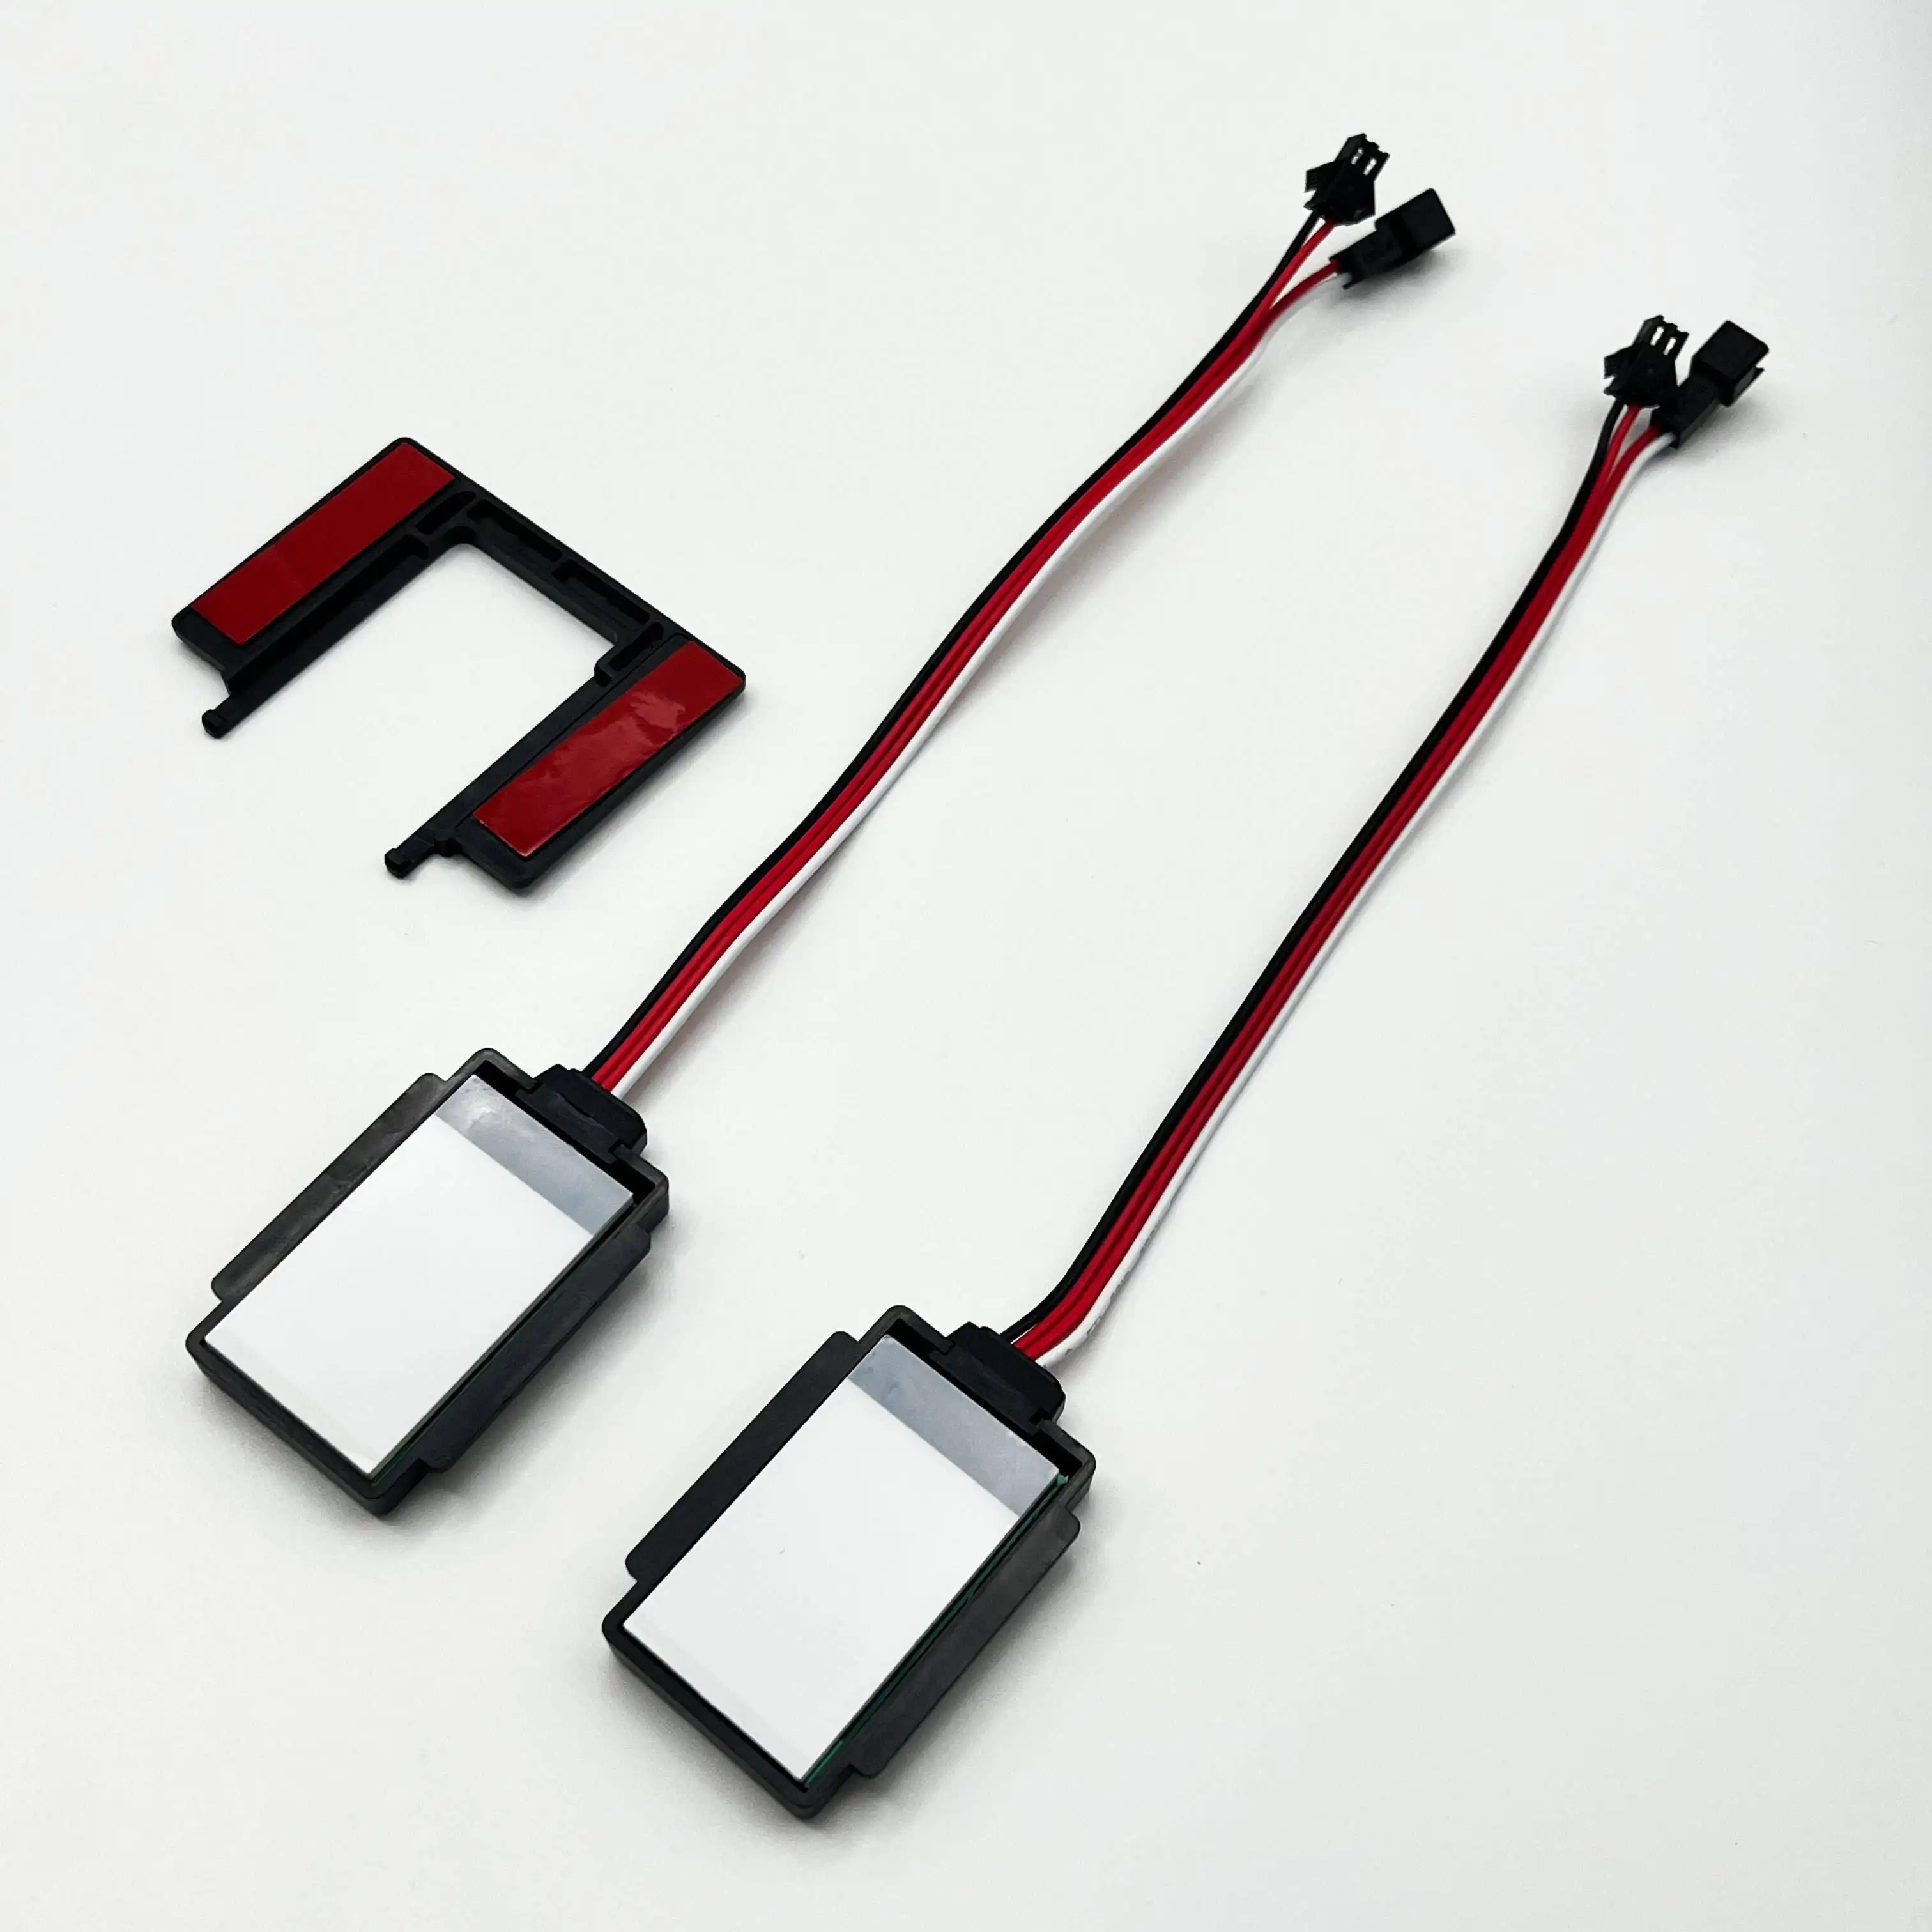 LED-Spiegel Smart 12v 5a 60w Badezimmer-Touch-Spiegelsc halter Dimmer Beleuchteter einfarbiger Single-Touch-Schalter-Sensor für Spiegel